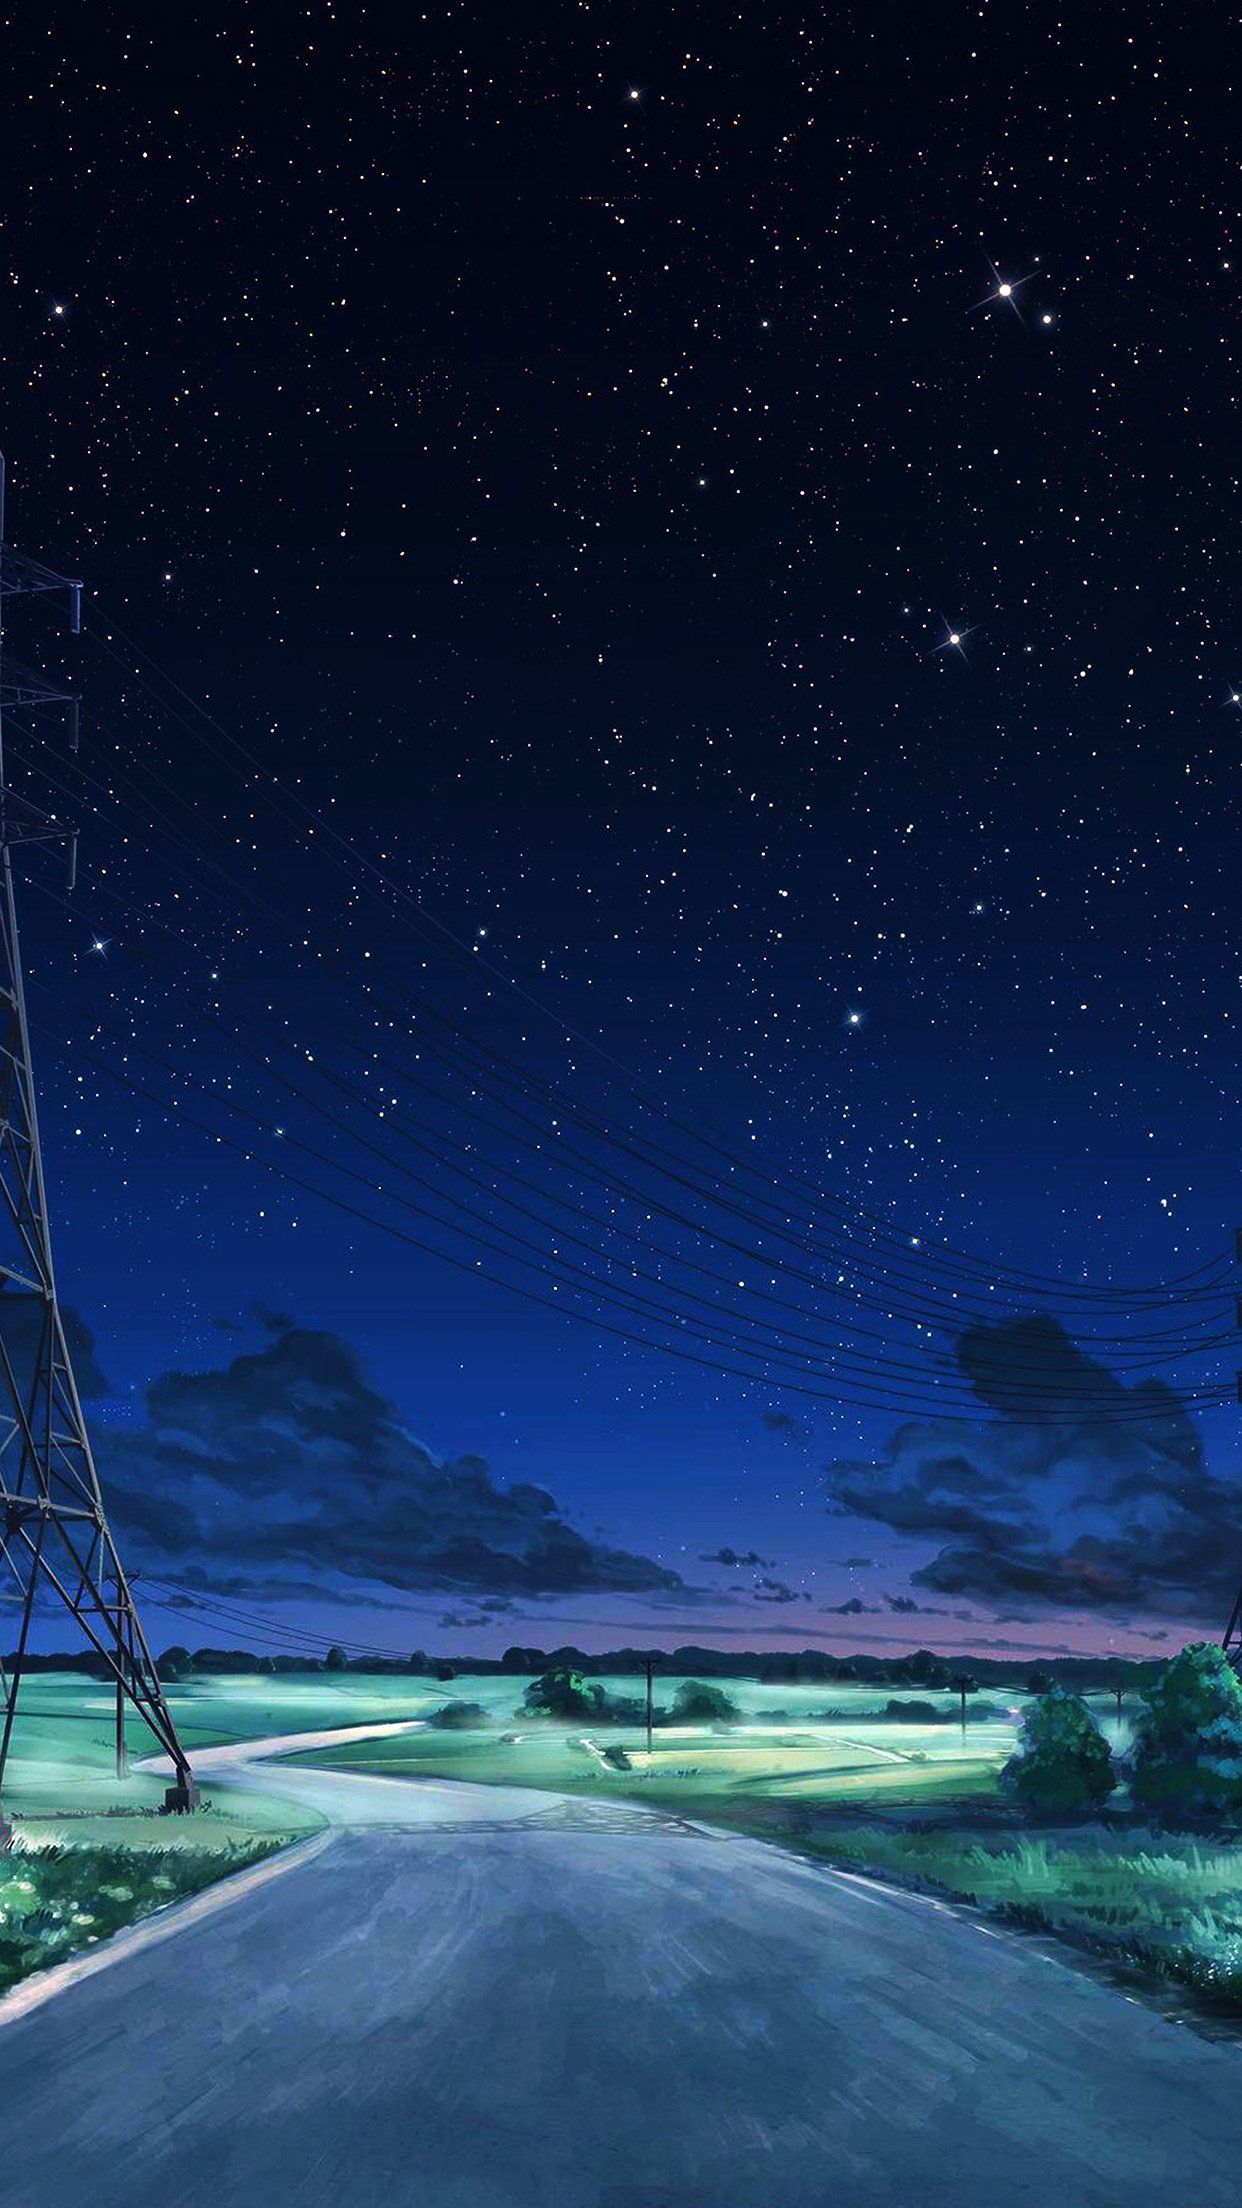 Image result for anime night sky ì ëëìì ìë ëíë ë íë ëí